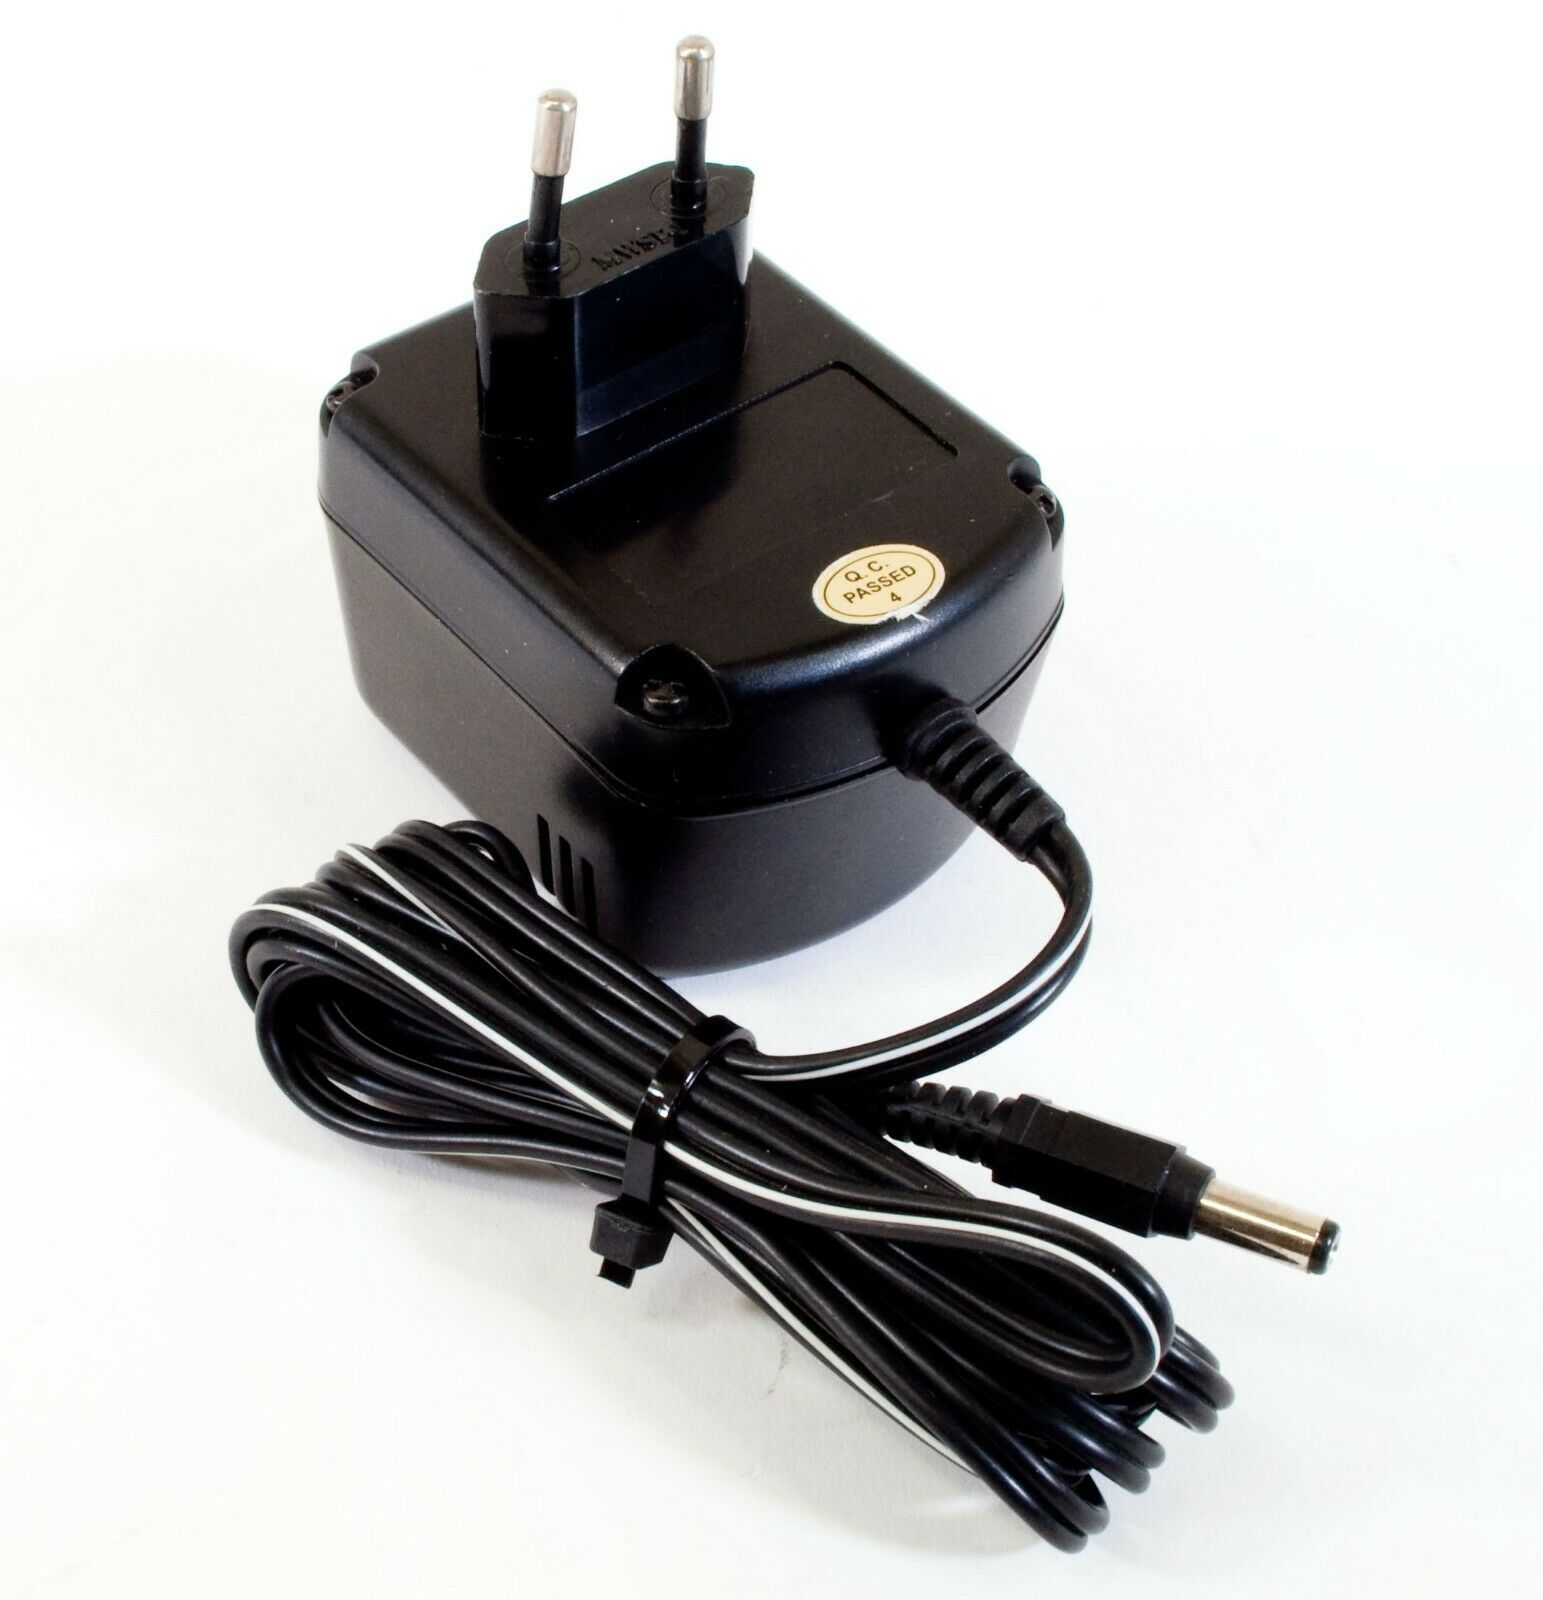 Bontempi AD177-10 AC Adapter 12V 1000mA Original Power Supply Europlug Output Current: 1000 mA Voltage: 12 V MPN: MK1